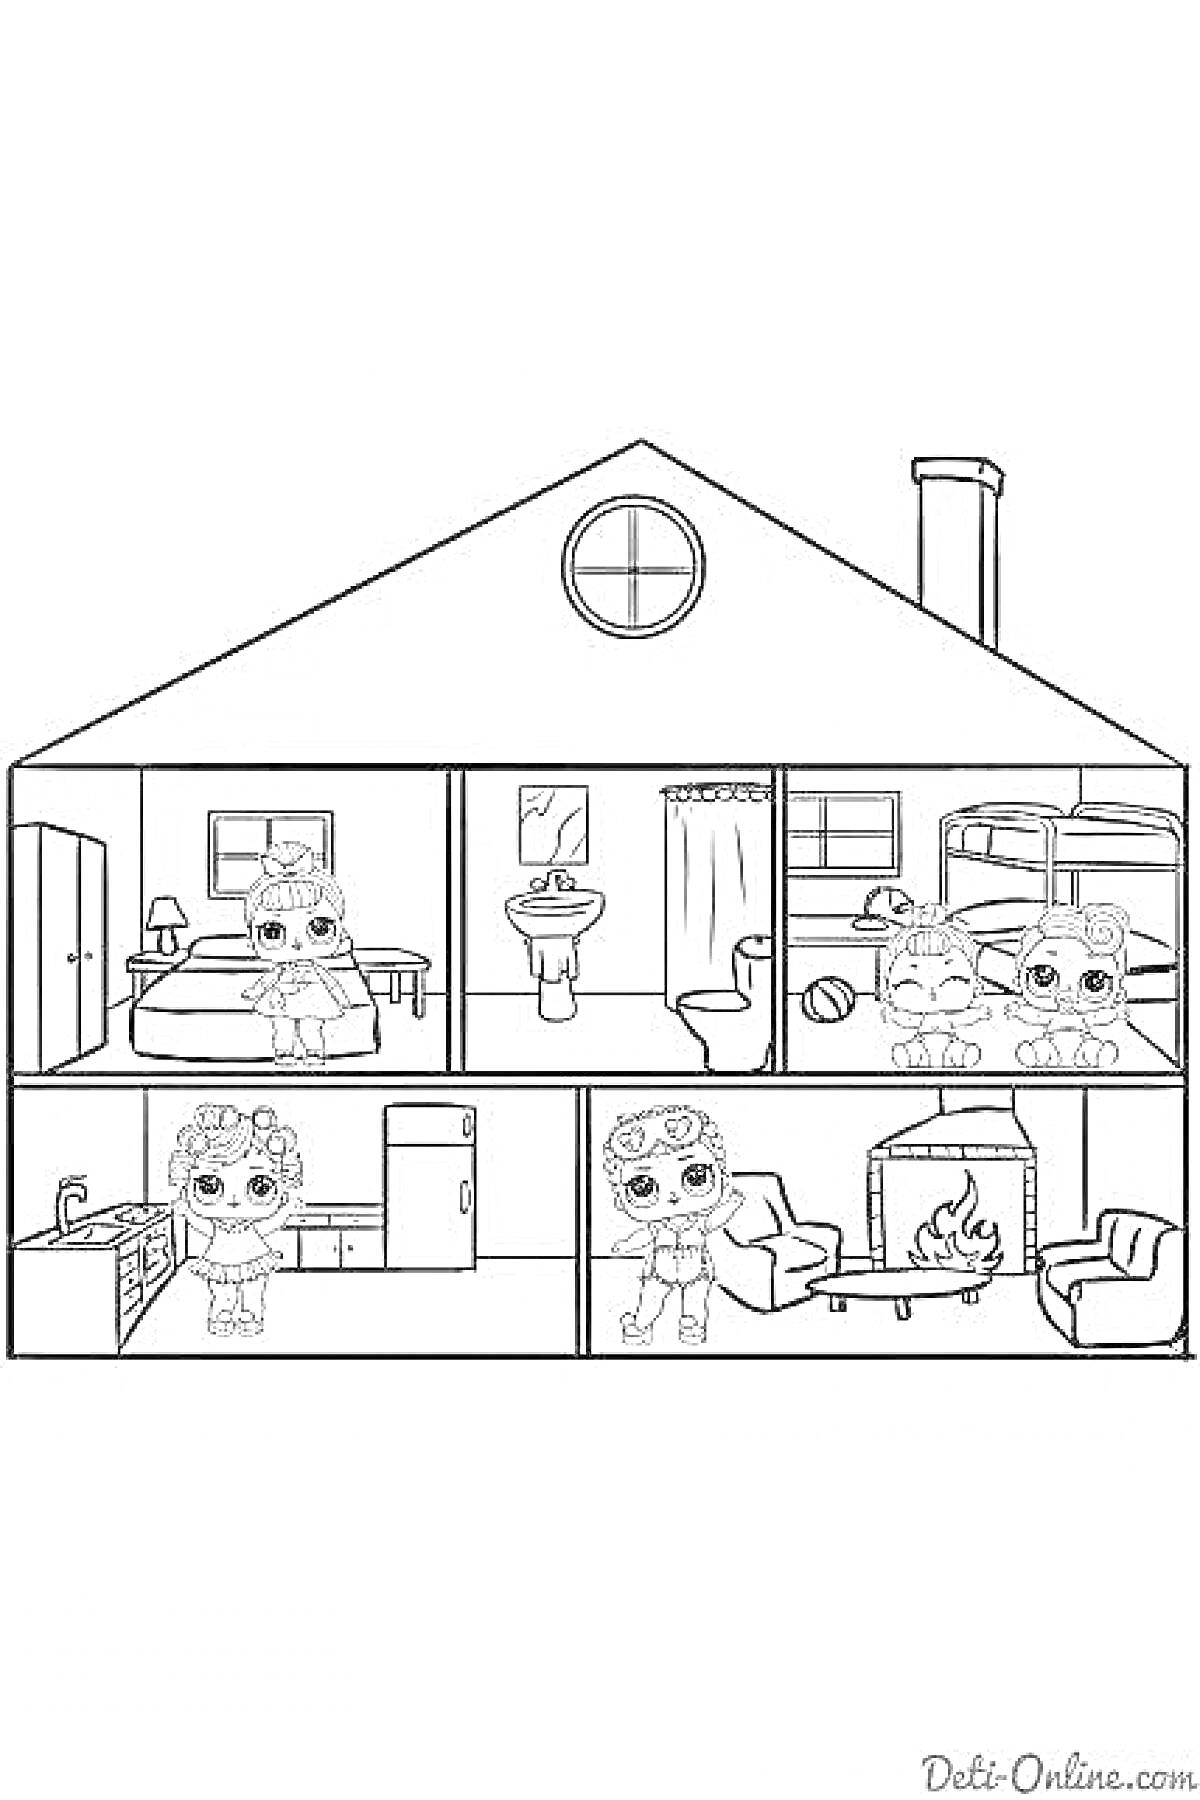 На раскраске изображено: Домик лол, Кукольный дом, Мебель, Кровати, Кухня, Камин, Игрушки, Ванная комната